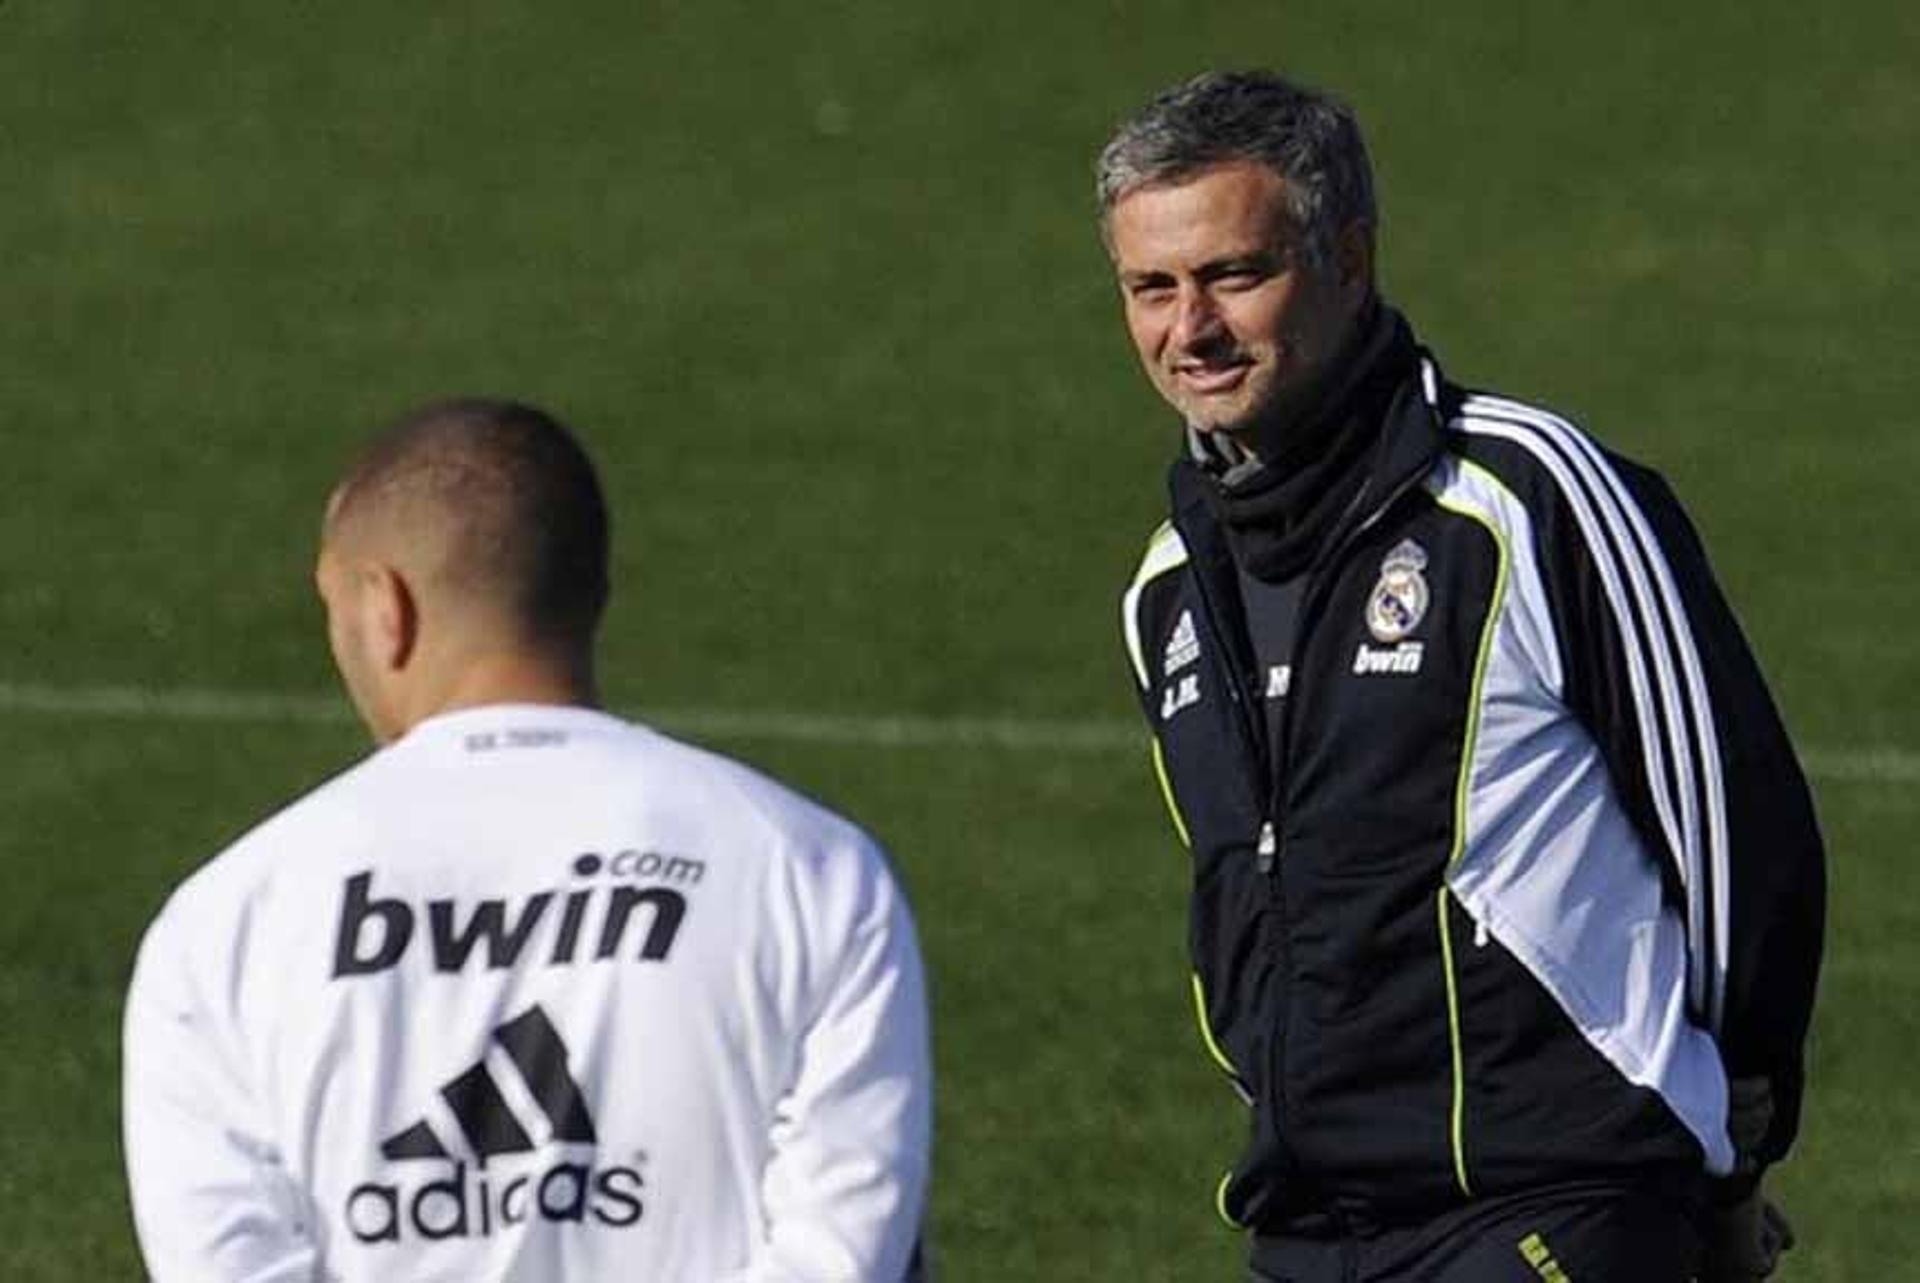 Antes de Ancelotti o Real Madrid ficou sob o comando do português José Mourinho. Ele ficou à frente do elenco entre 2010 e 2013, mas não foi brilhante. De relevante, ganhou apenas o Campeonato Espanhol na temporada 2011/2012